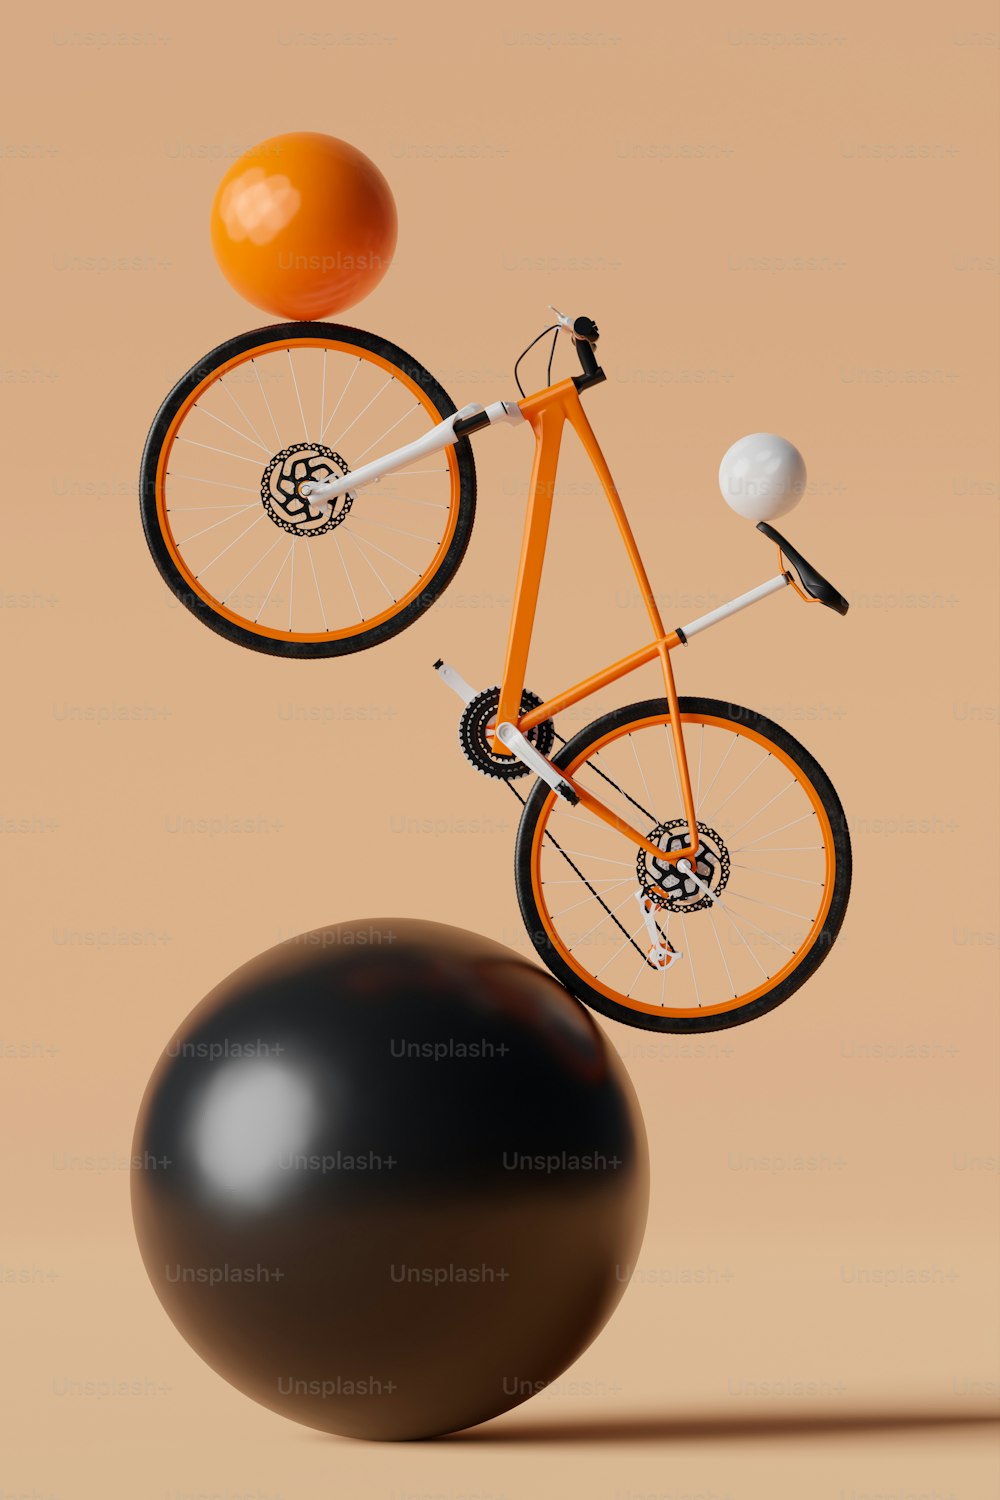 검은 공 위에서 균형을 잡는 주황색 자전거